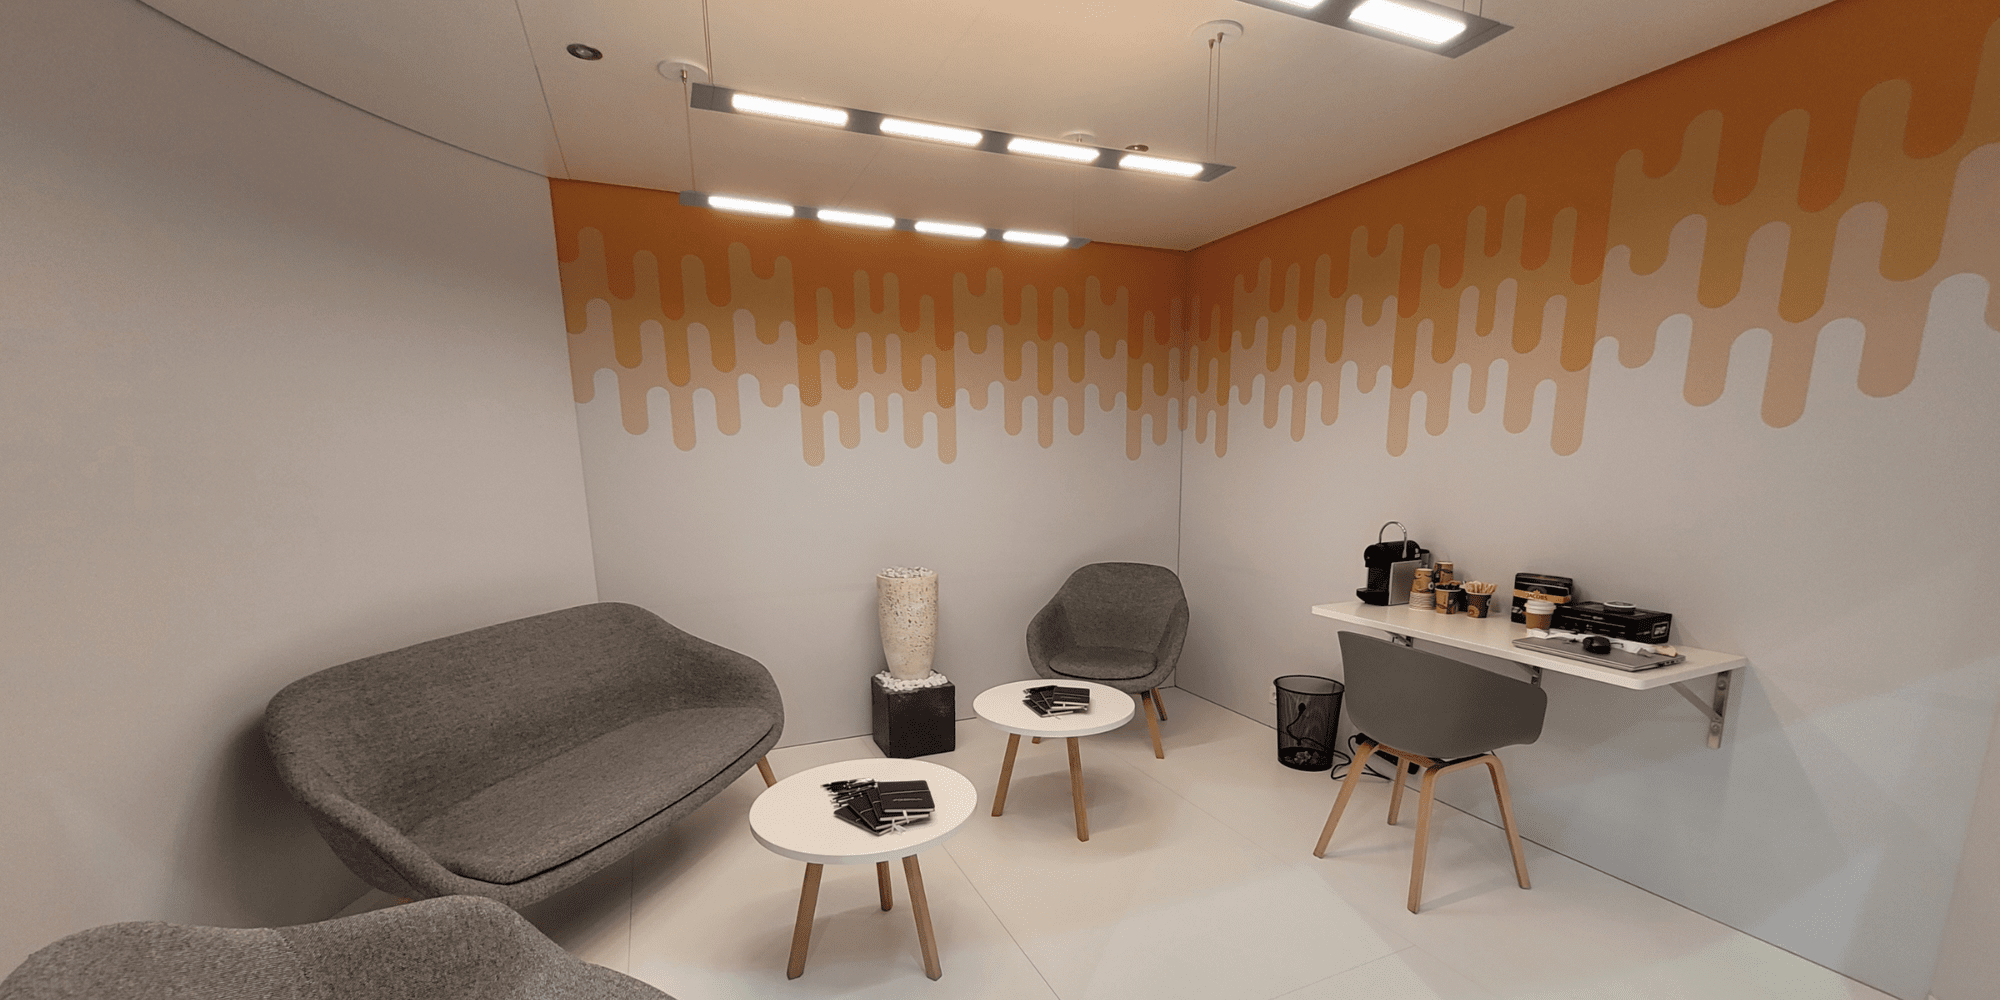 OLED Experience Room | OLEDWorks